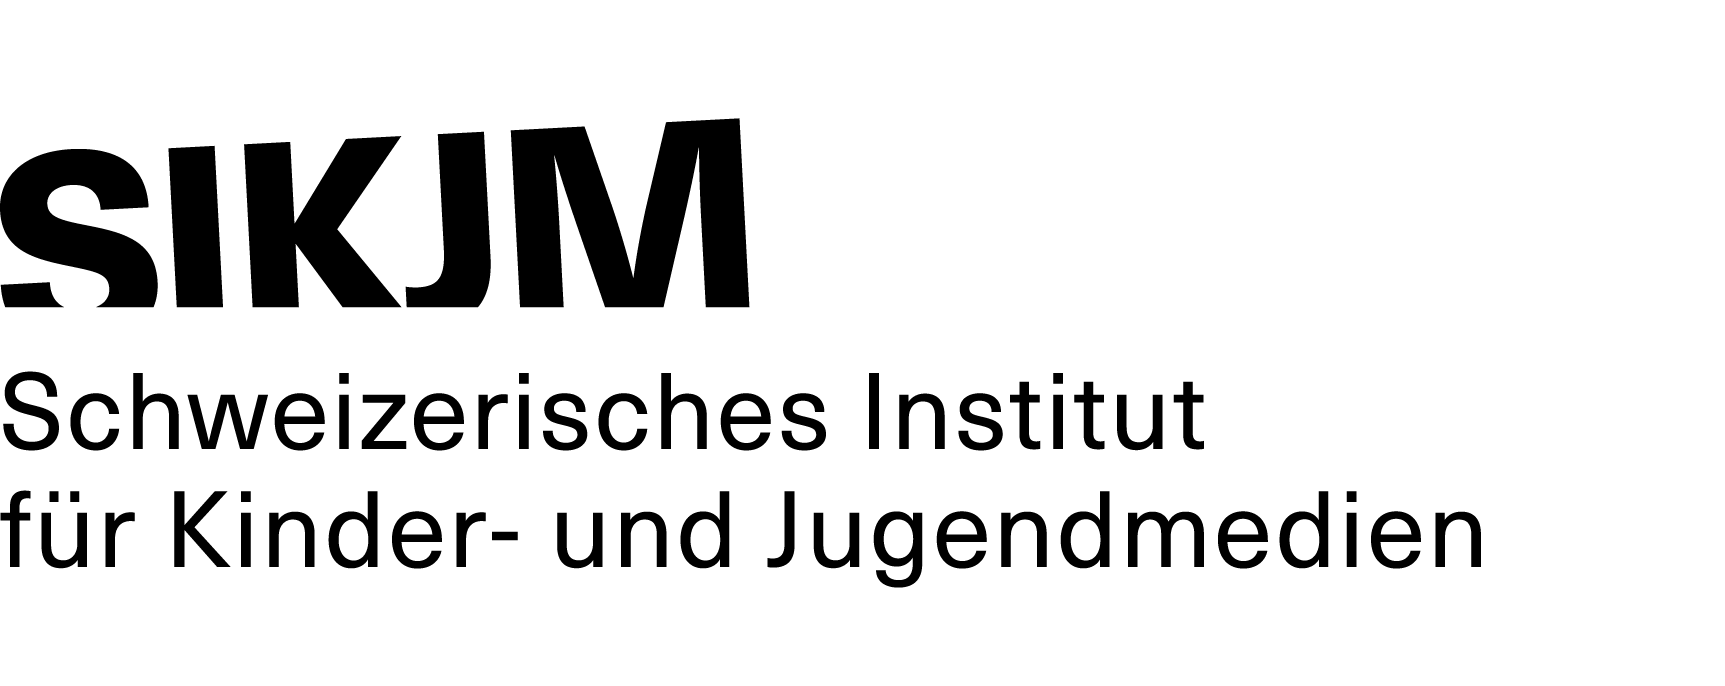 SIKJM Logo